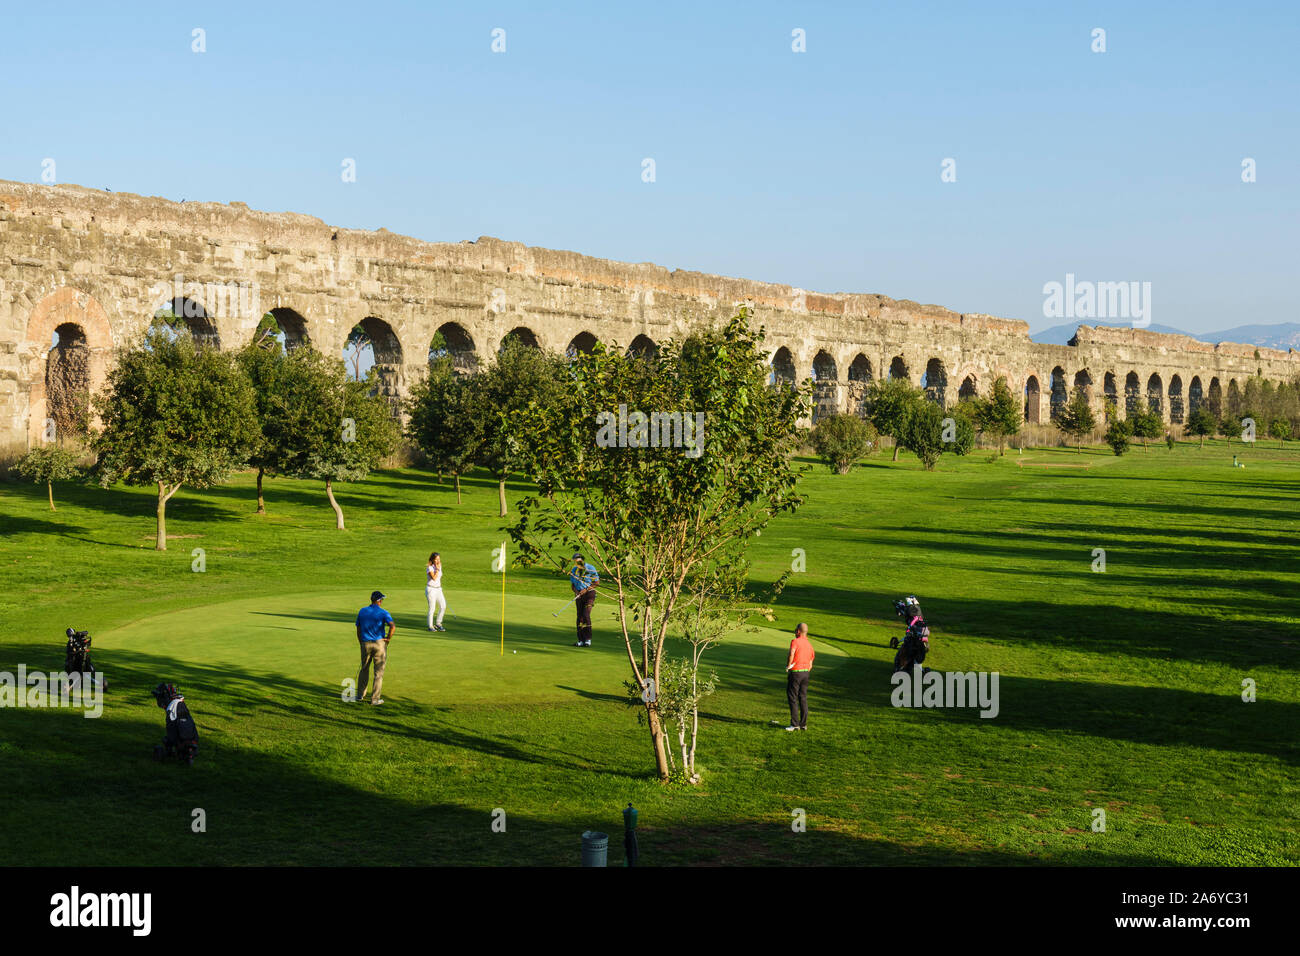 Rome. L'Italie. Parco degli Acquedotti, jouer au golf sur la toile de l'ancien aqueduc romain Aqua Claudia, commencé par l'empereur Caligula en 38 ANNONCE Banque D'Images